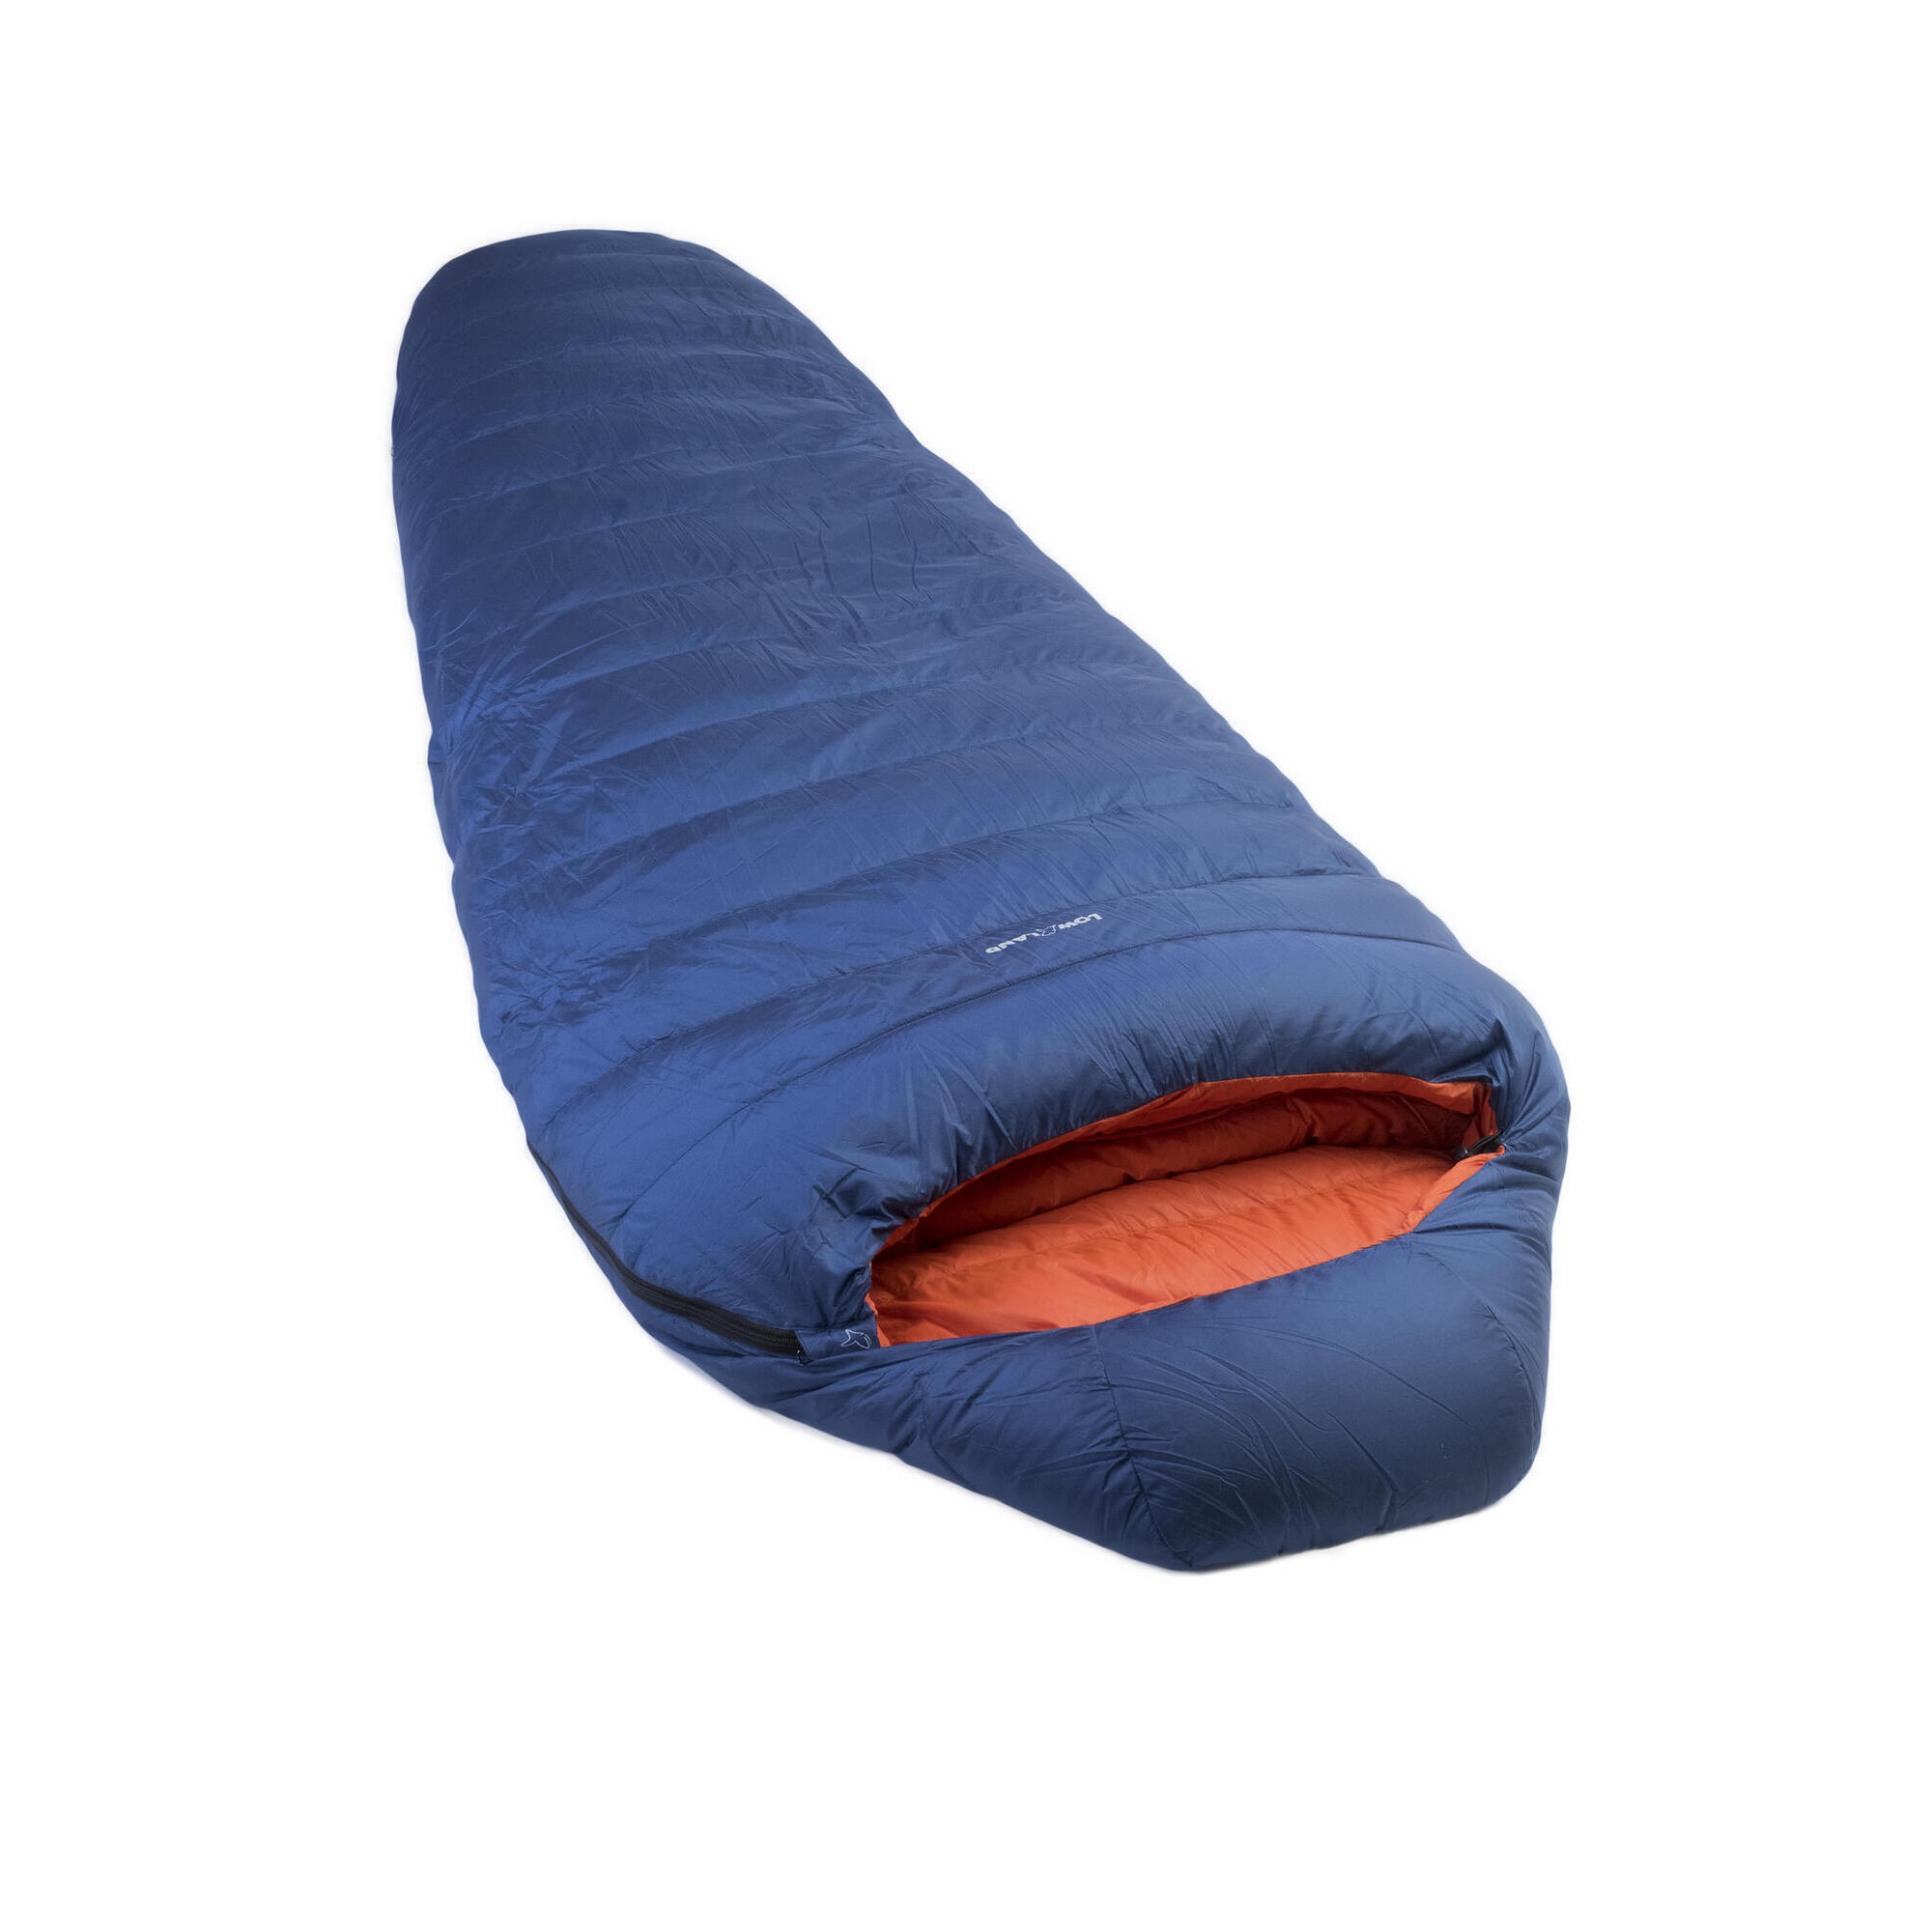 Мешок Kibo - 5 пуховый спальный нейлоновый 225x80 см, сине - оранжевый цена и фото